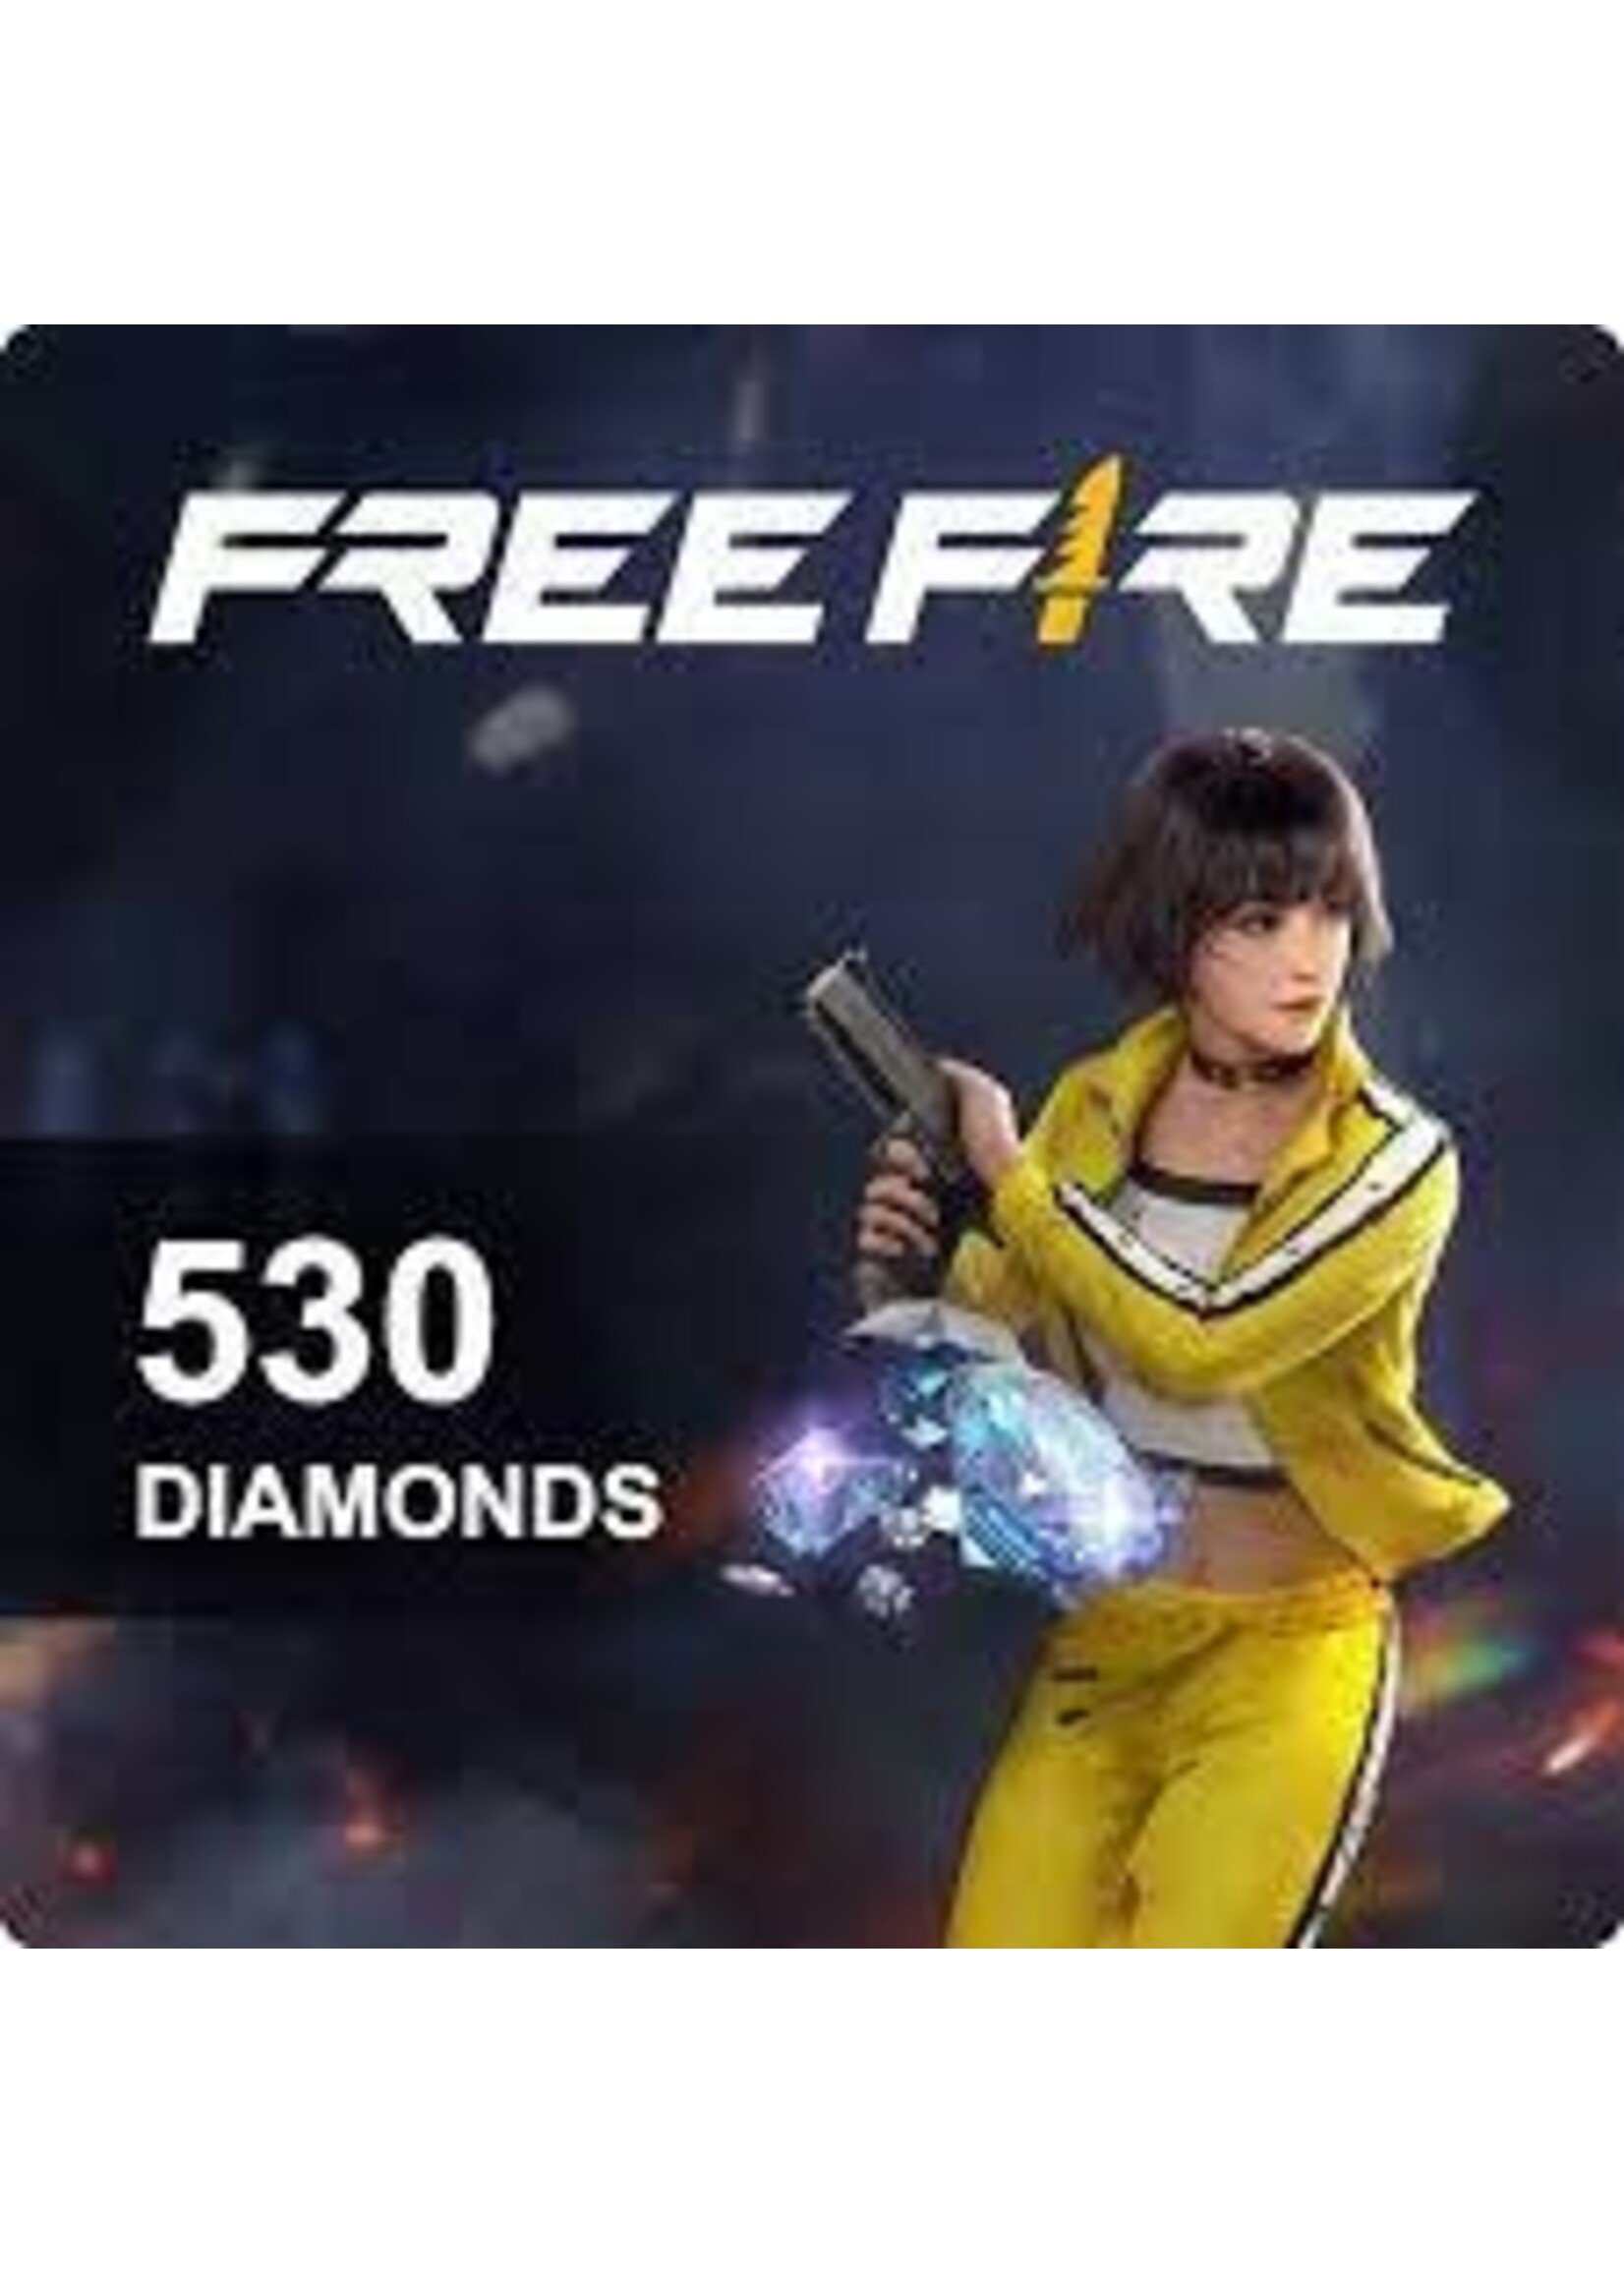 Sony Freefire 530